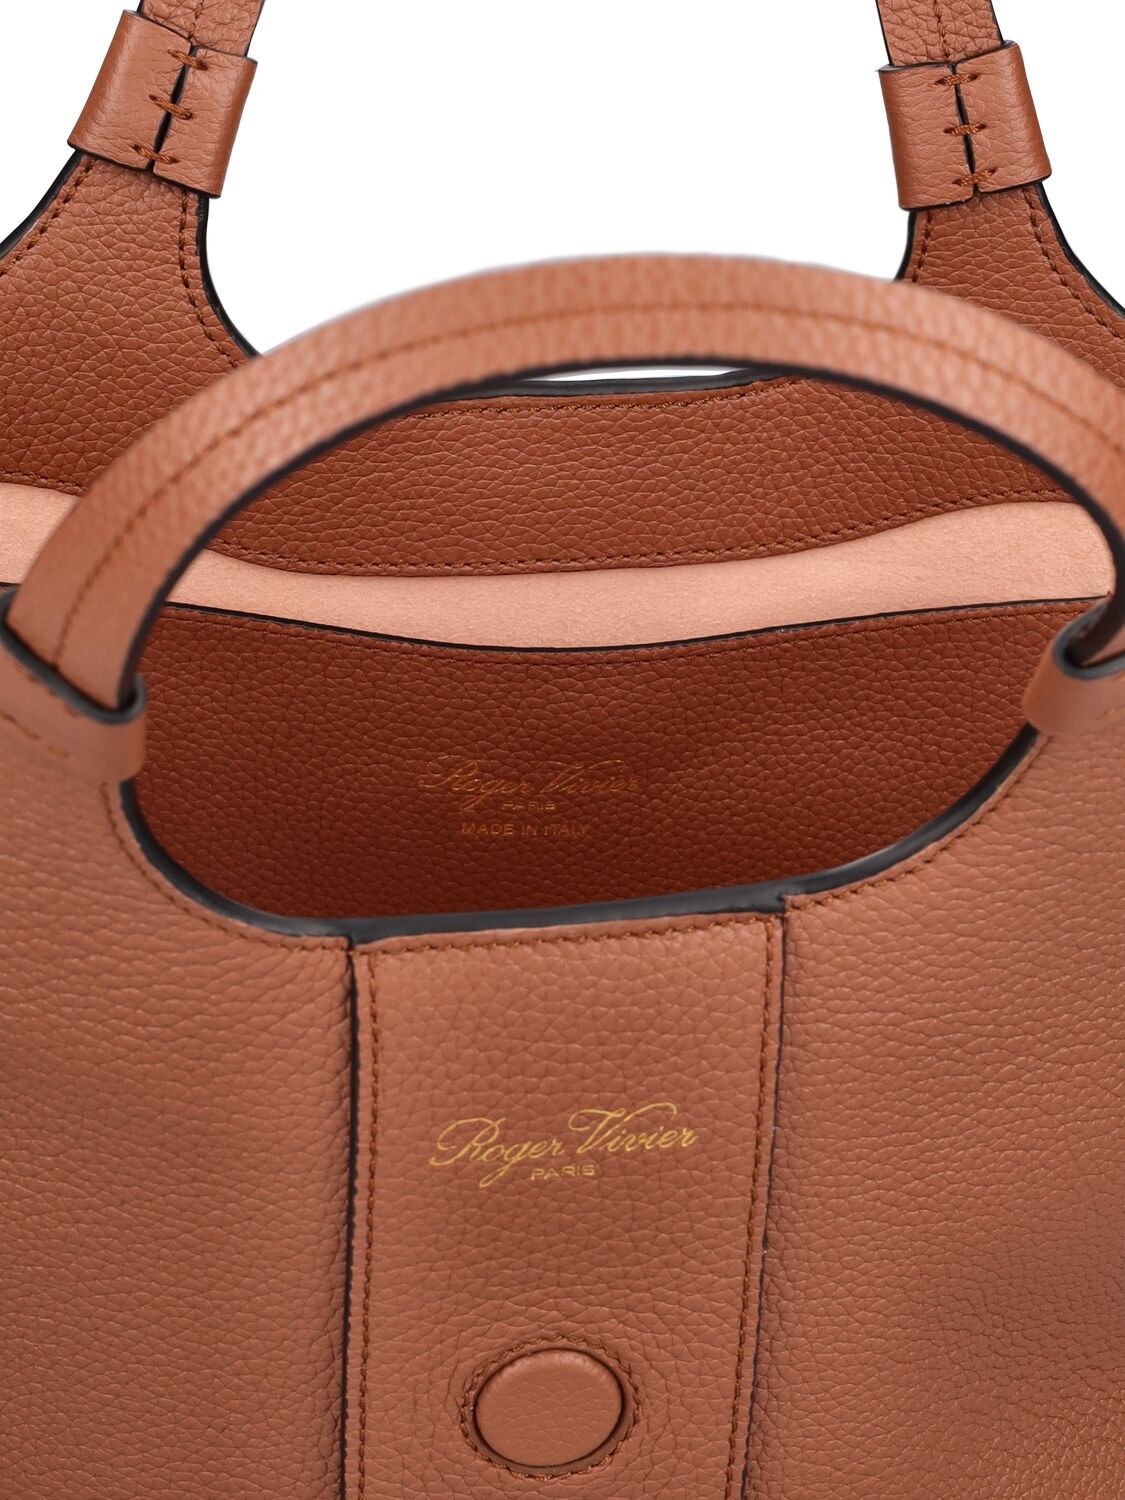 Shop Roger Vivier Mini Grand Vivier Choc Leather Bag In Cognac Scuro